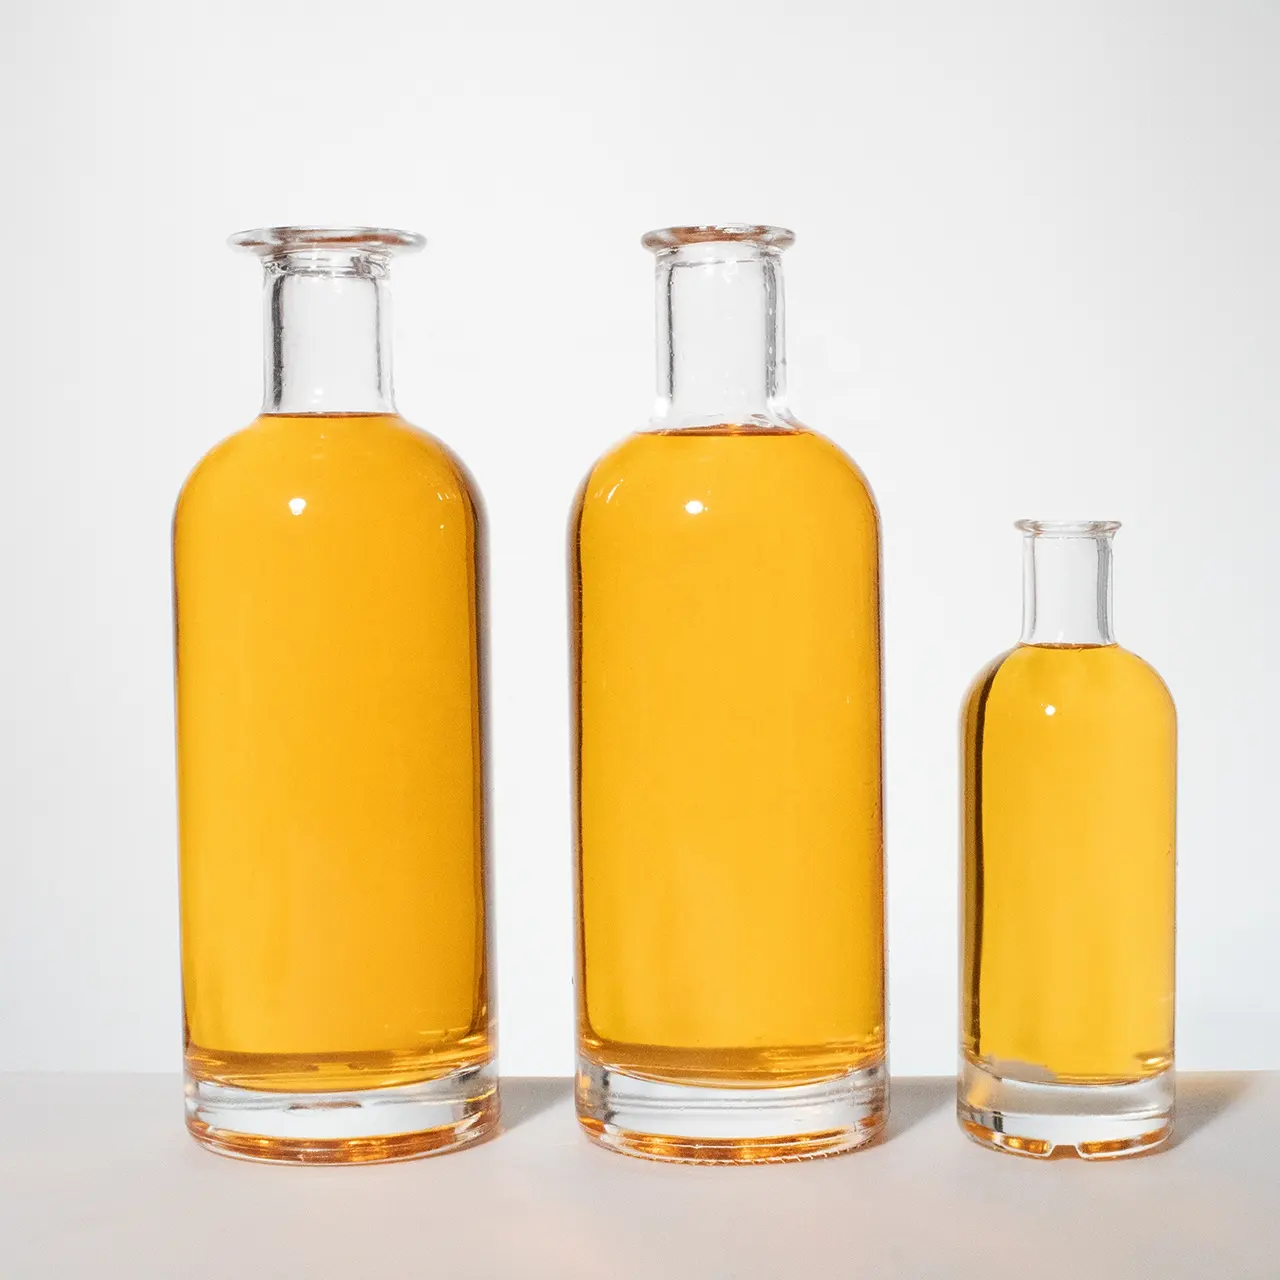 Zylinder Runde Form Breite Lip Extra Flint glas schnaps flasche 70cl Gin 700ml Glas Flaschen